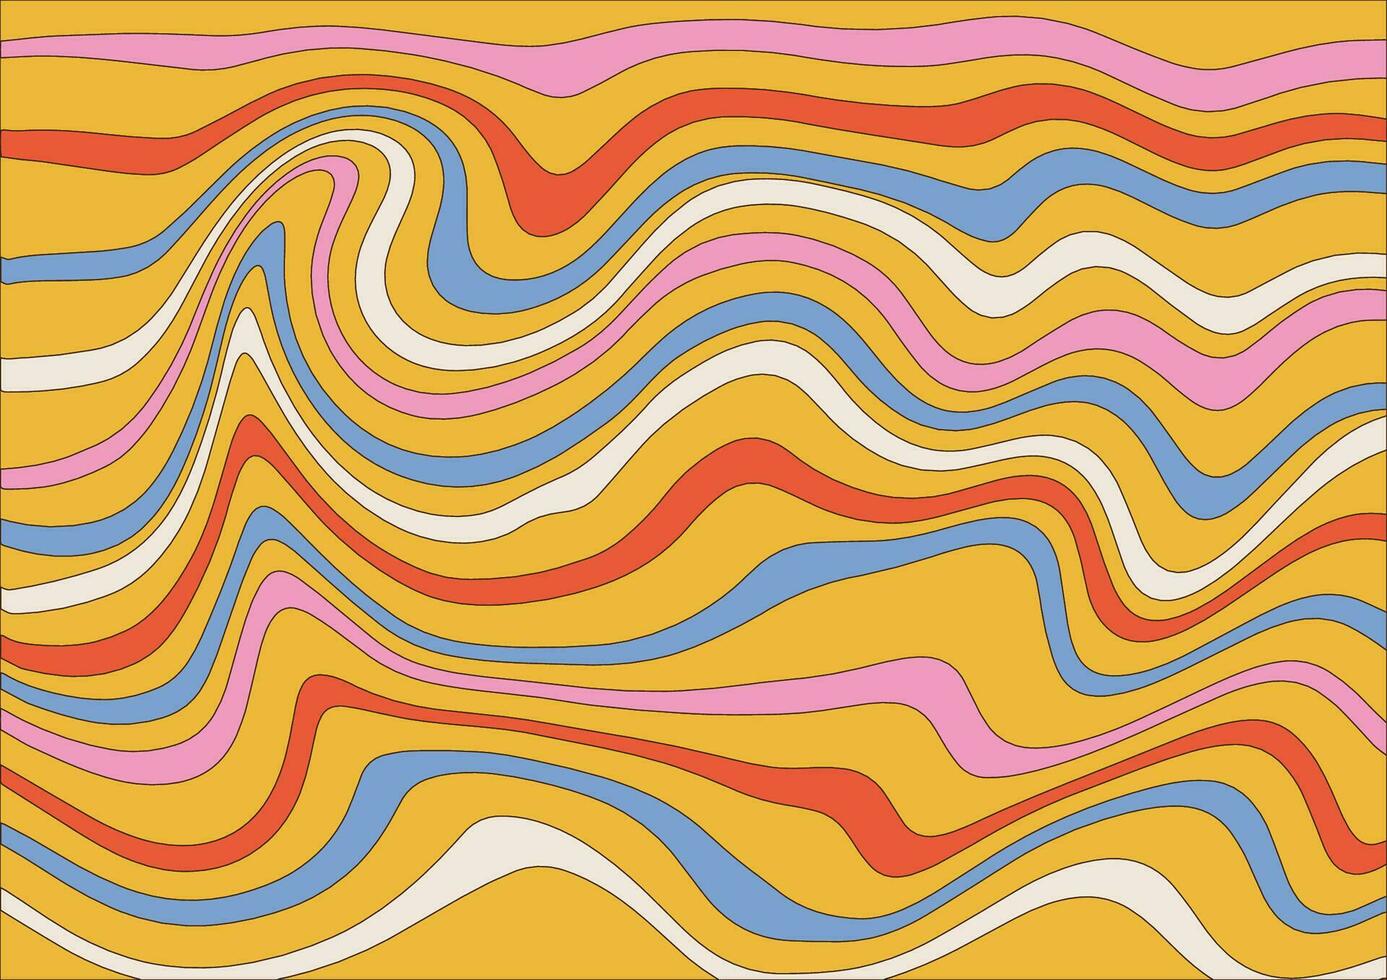 abstrakt horisontell häftig bakgrund med färgrik asymmetrisk vågor. trendig vektor illustration i stil retro 60-tal, 70-tal. pastell färger med kontur rader.